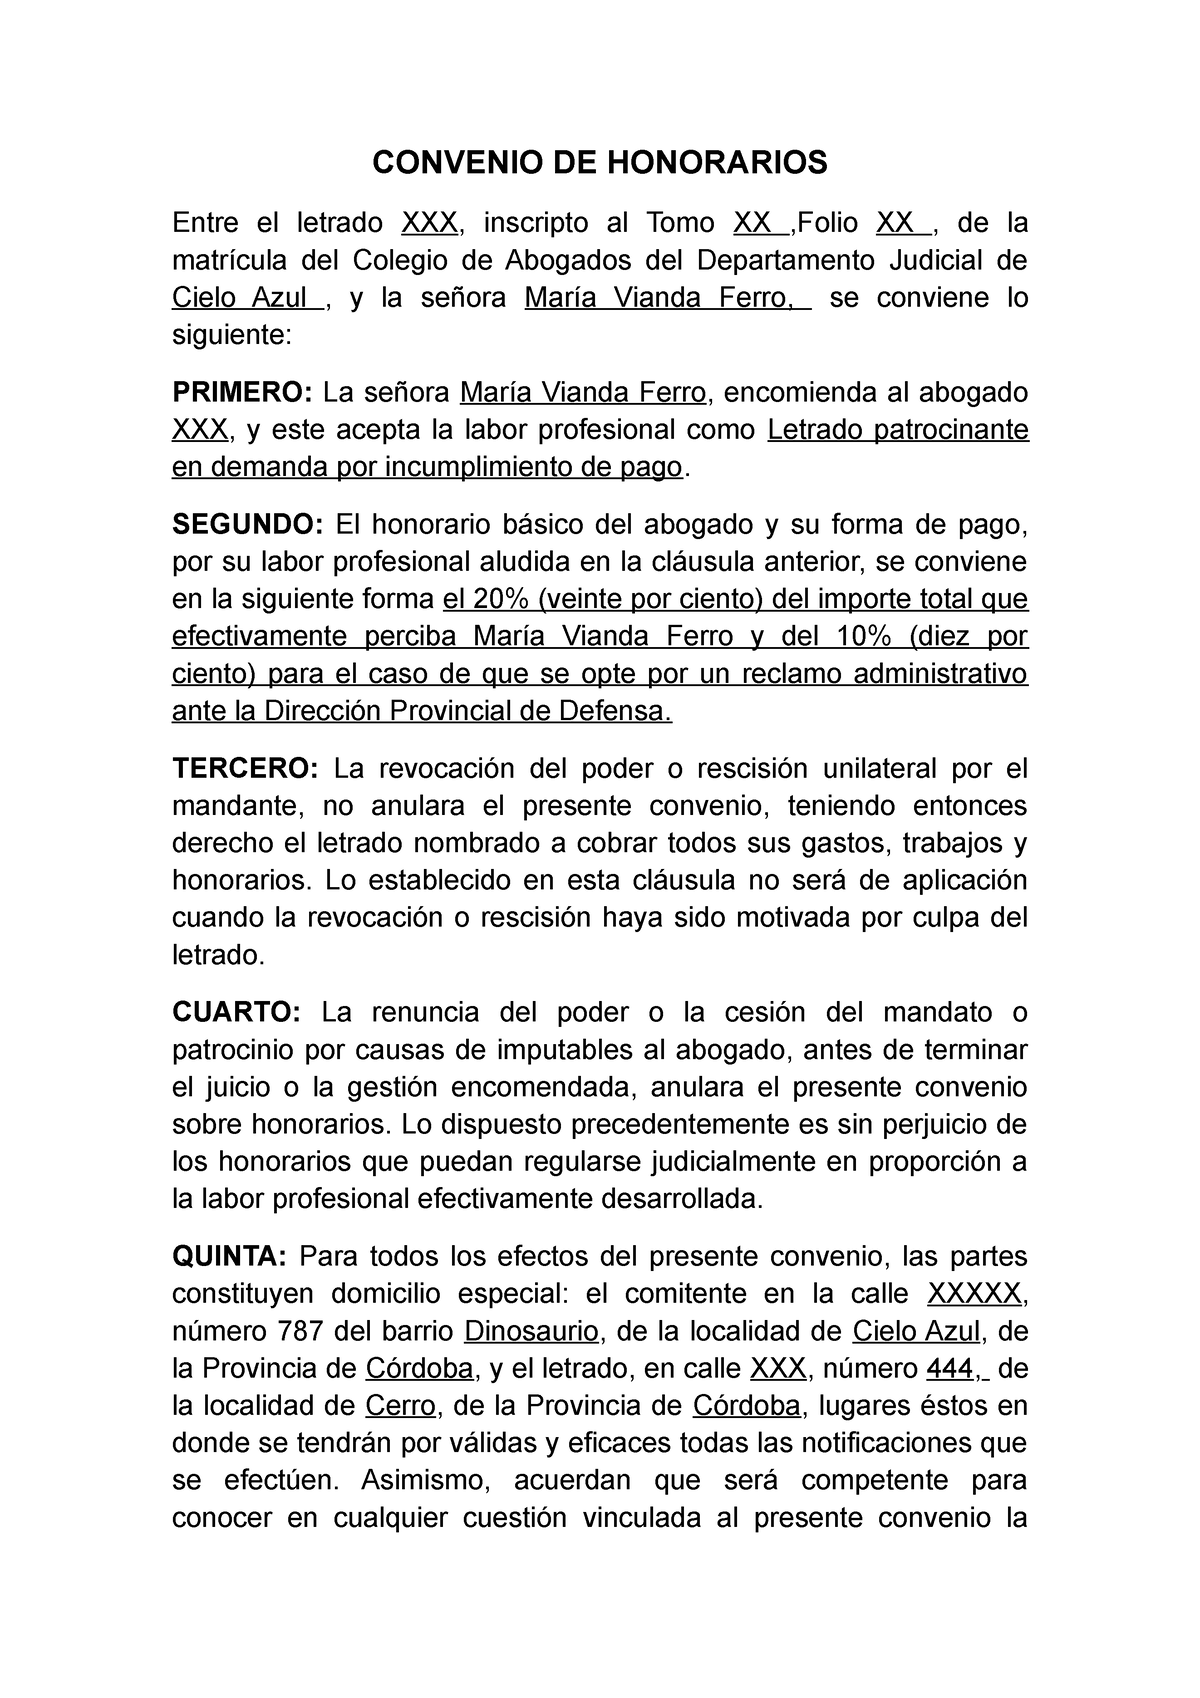 Convenio De Honorarios Convenio De Honorarios Entre El Letrado Xxx Inscripto Al Tomo Xx 1478